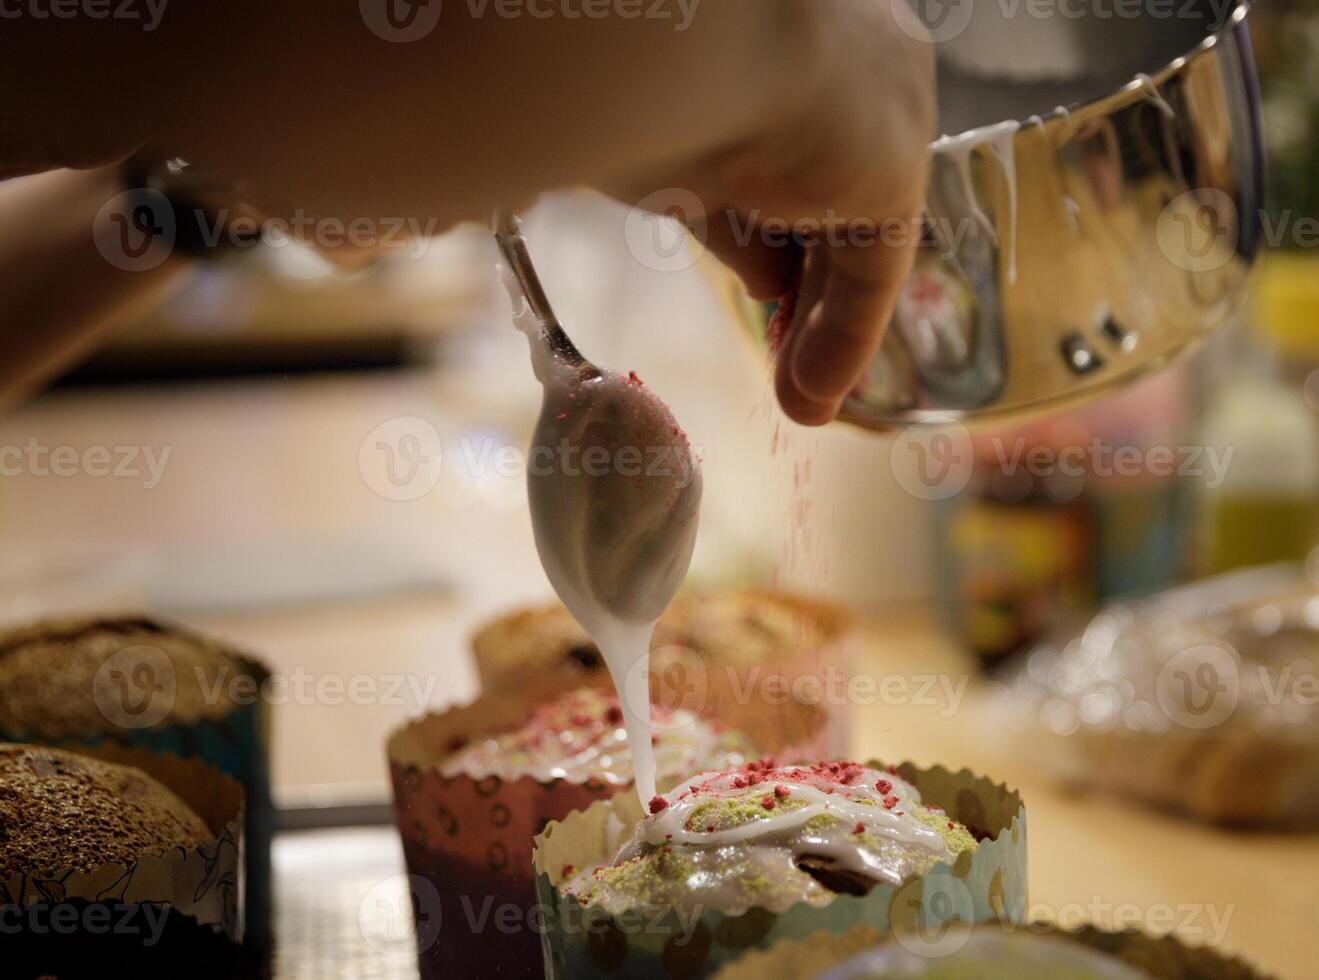 de kock händer smycka de muffins med glasyr socker och skivor av socker. bakgrund suddig, selektiv fokus.hög kvalitet Foto